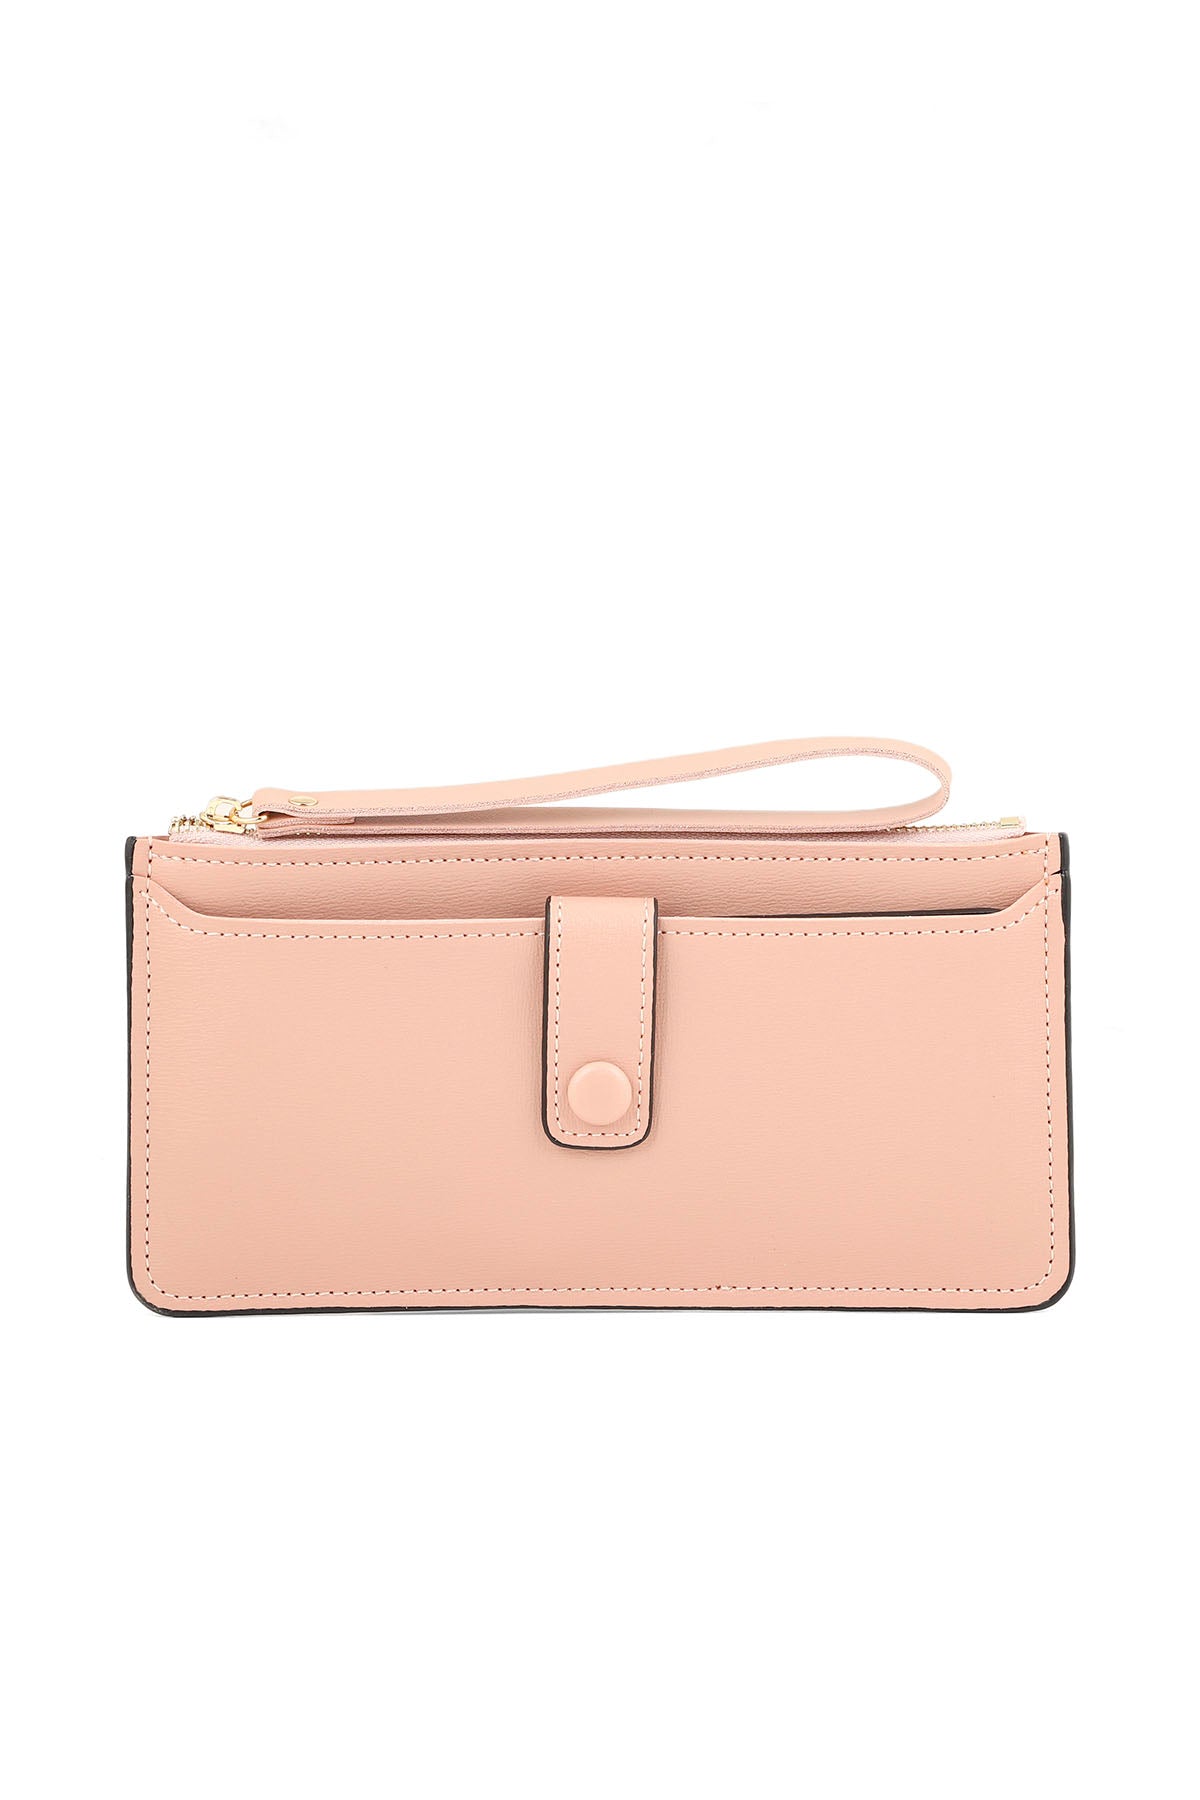 Wristlet Wallet B26049-Pink